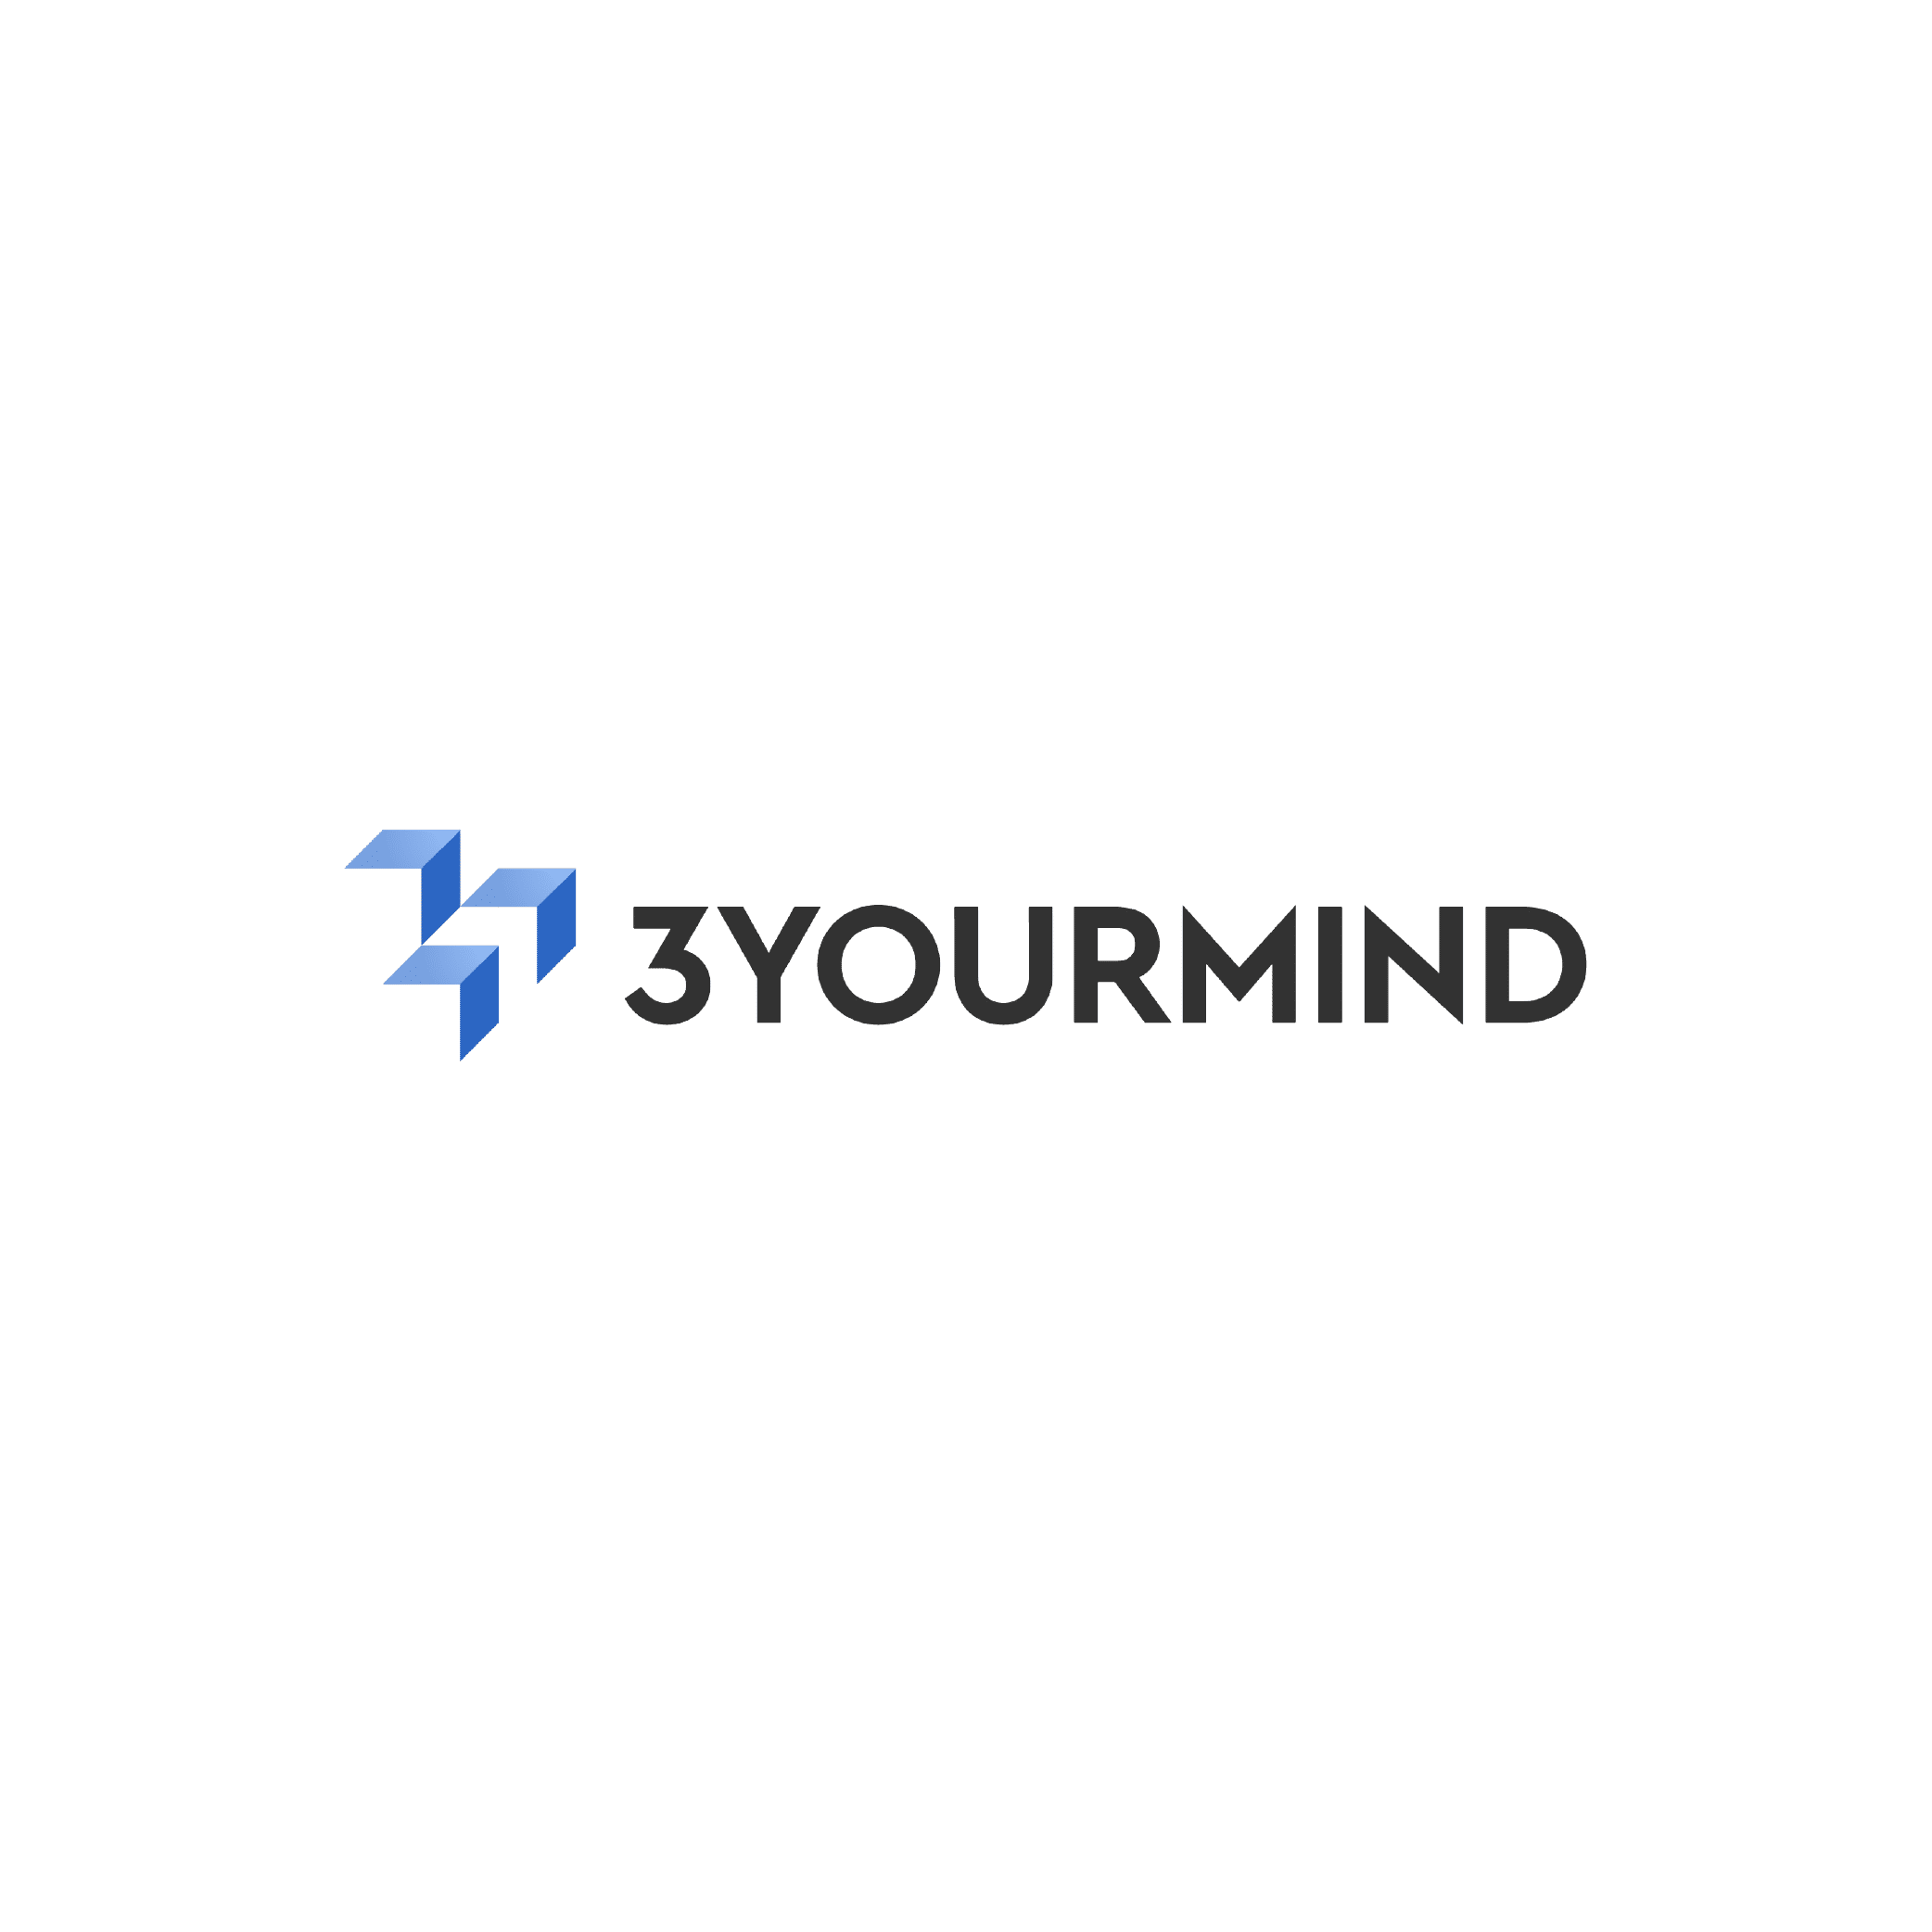 logo_3_yourmind